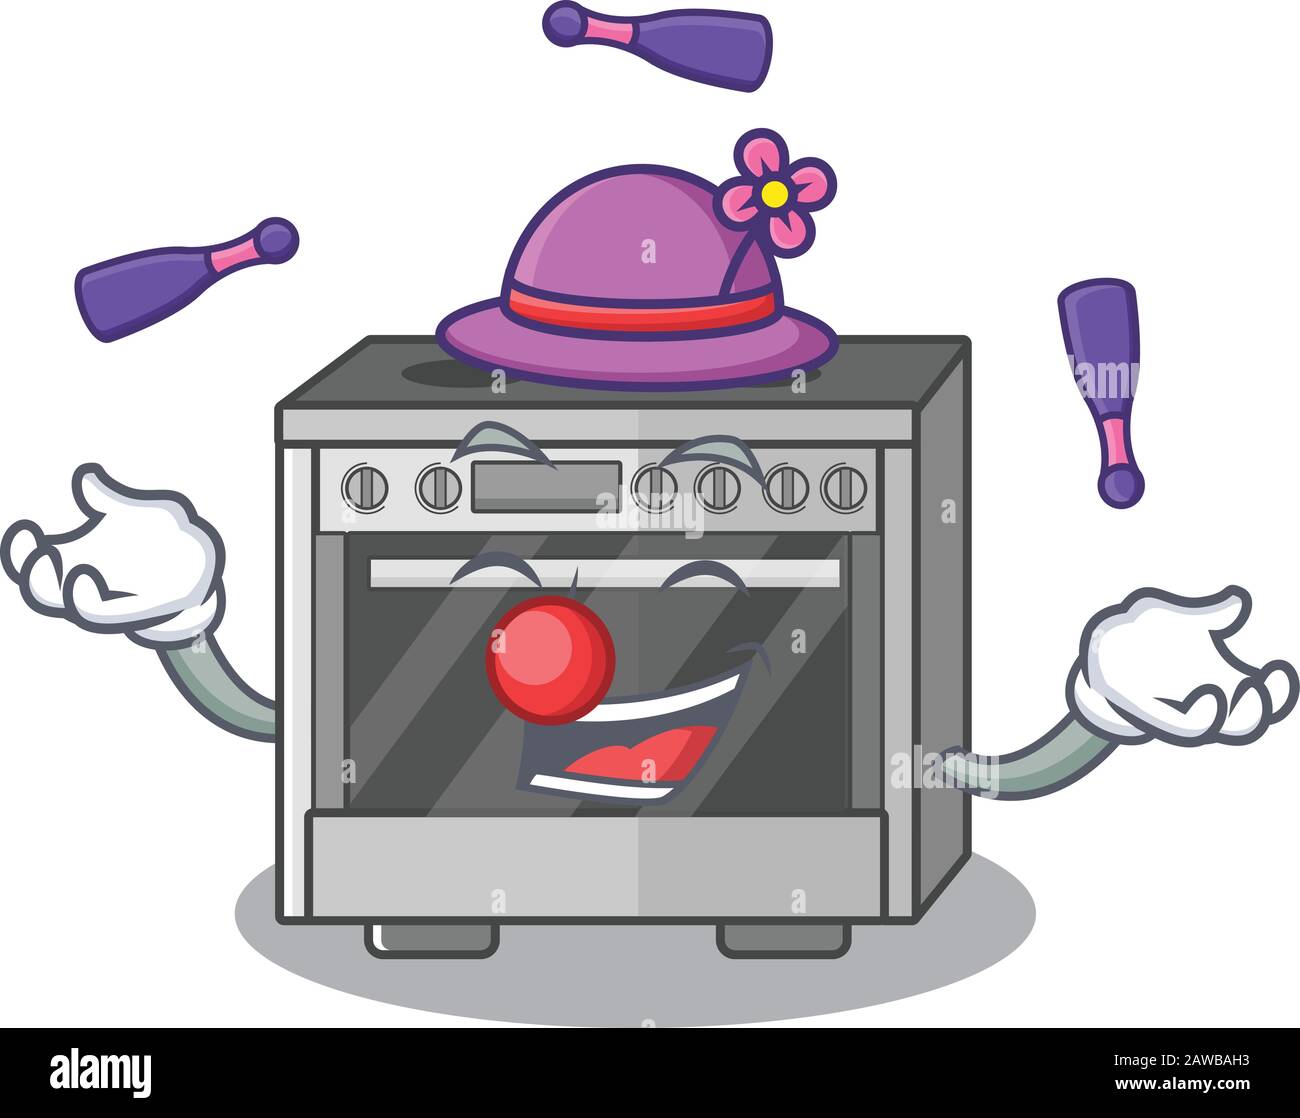 Ein lebendiges Cartoon-Character-Design mit Küchenofen, das Juggling spielt Stock Vektor